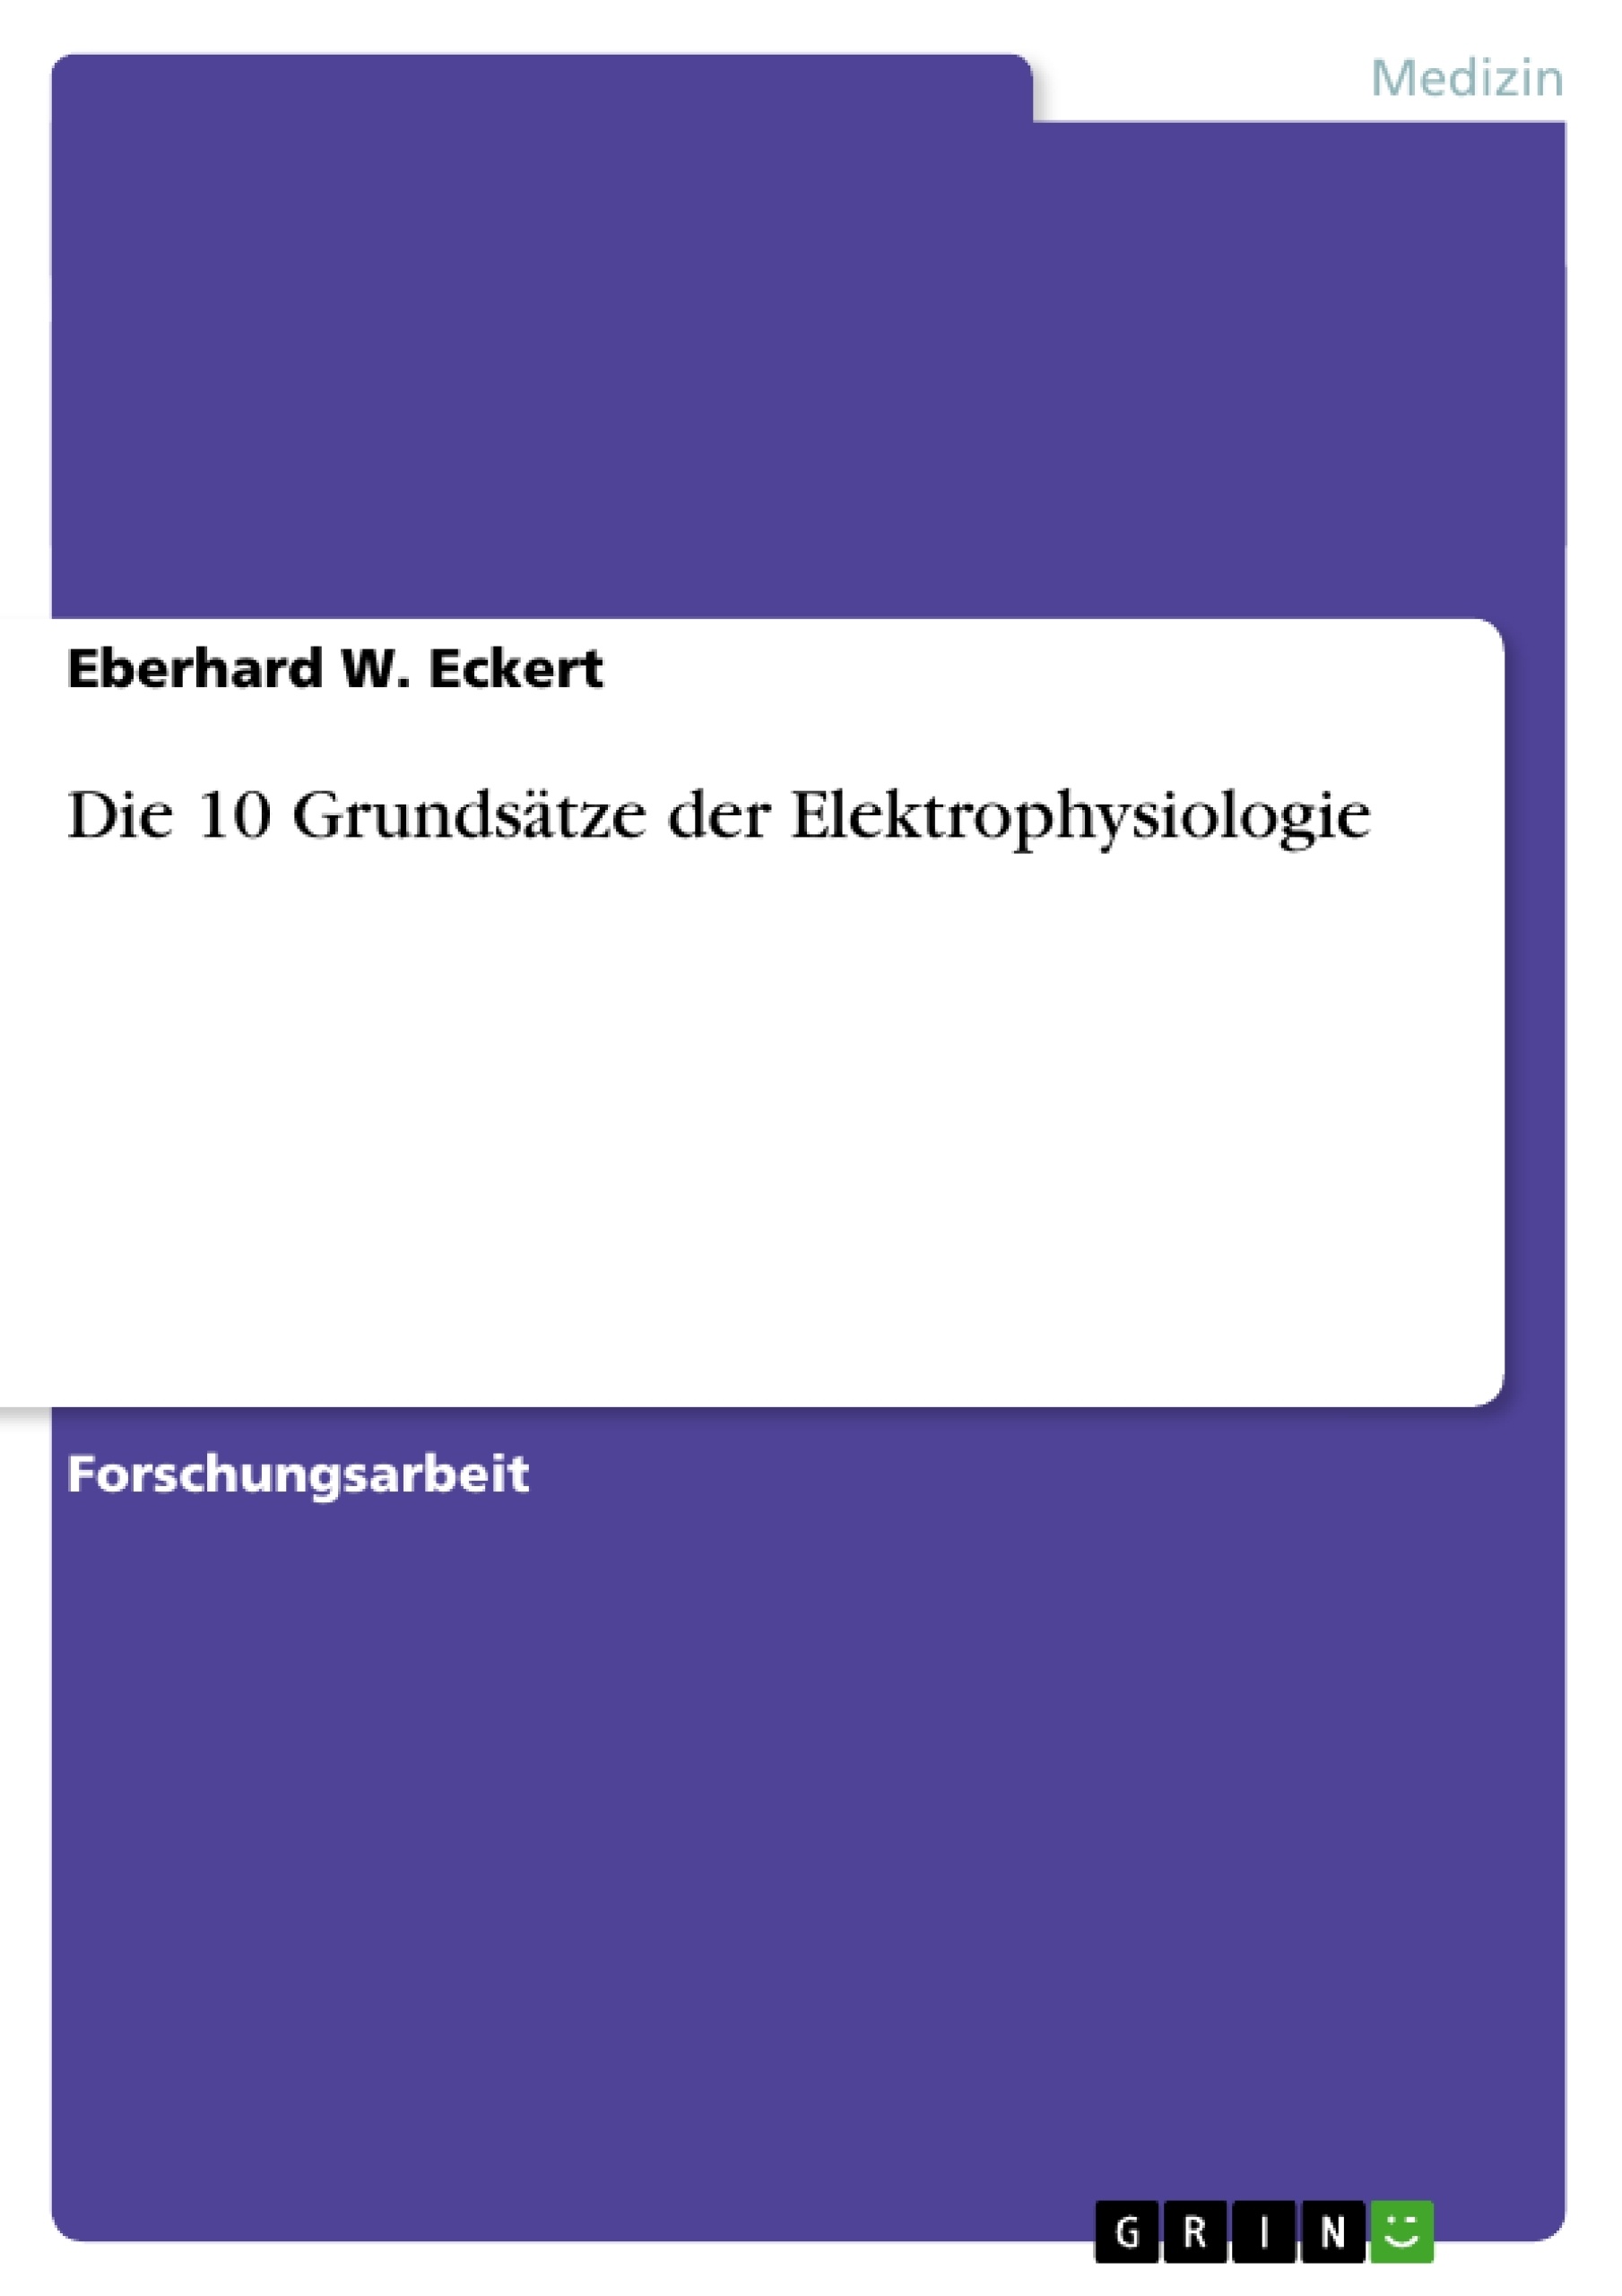 Title: Die 10 Grundsätze der Elektrophysiologie